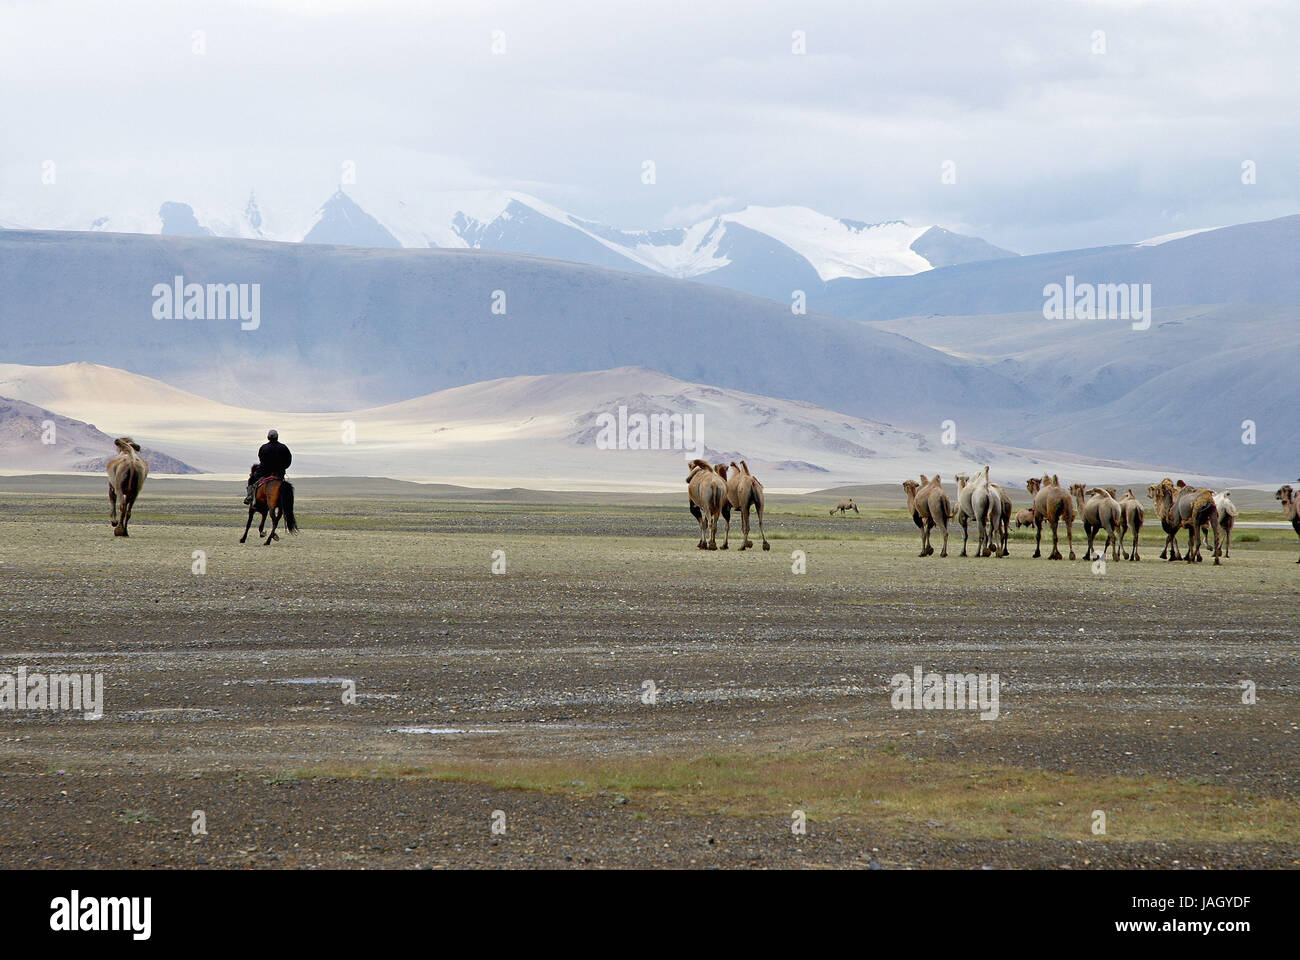 La Mongolie, province de l'ouest extrême,Bayan Olgii province,parc national Tsambagarav,chameaux,saigne, Banque D'Images